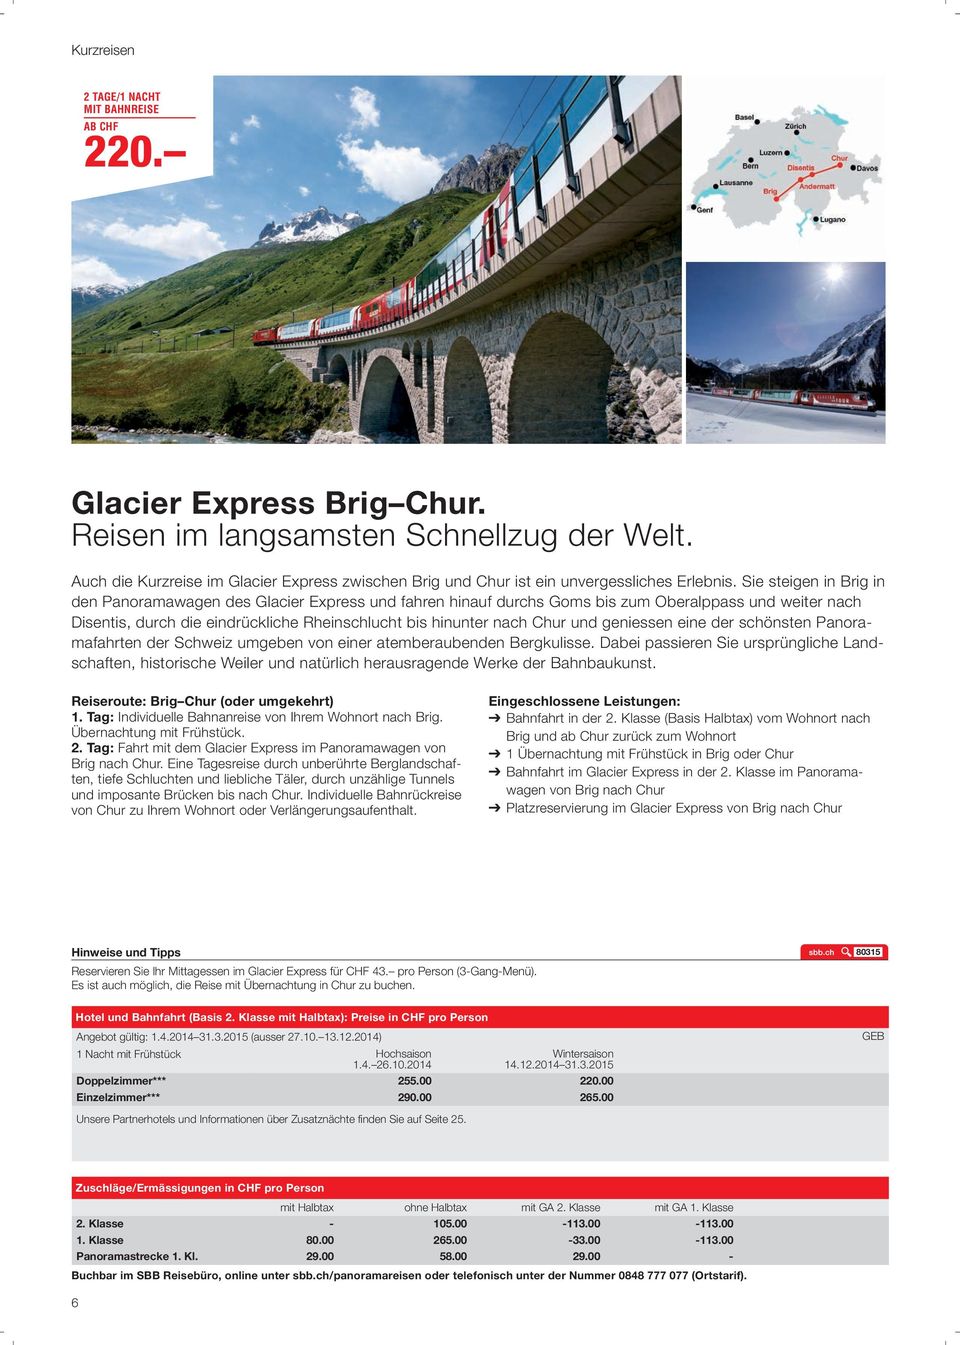 Sie steigen in Brig in den Panoramawagen des Glacier Express und fahren hinauf durchs Goms bis zum Oberalppass und weiter nach Disentis, durch die eindrückliche Rheinschlucht bis hinunter nach Chur